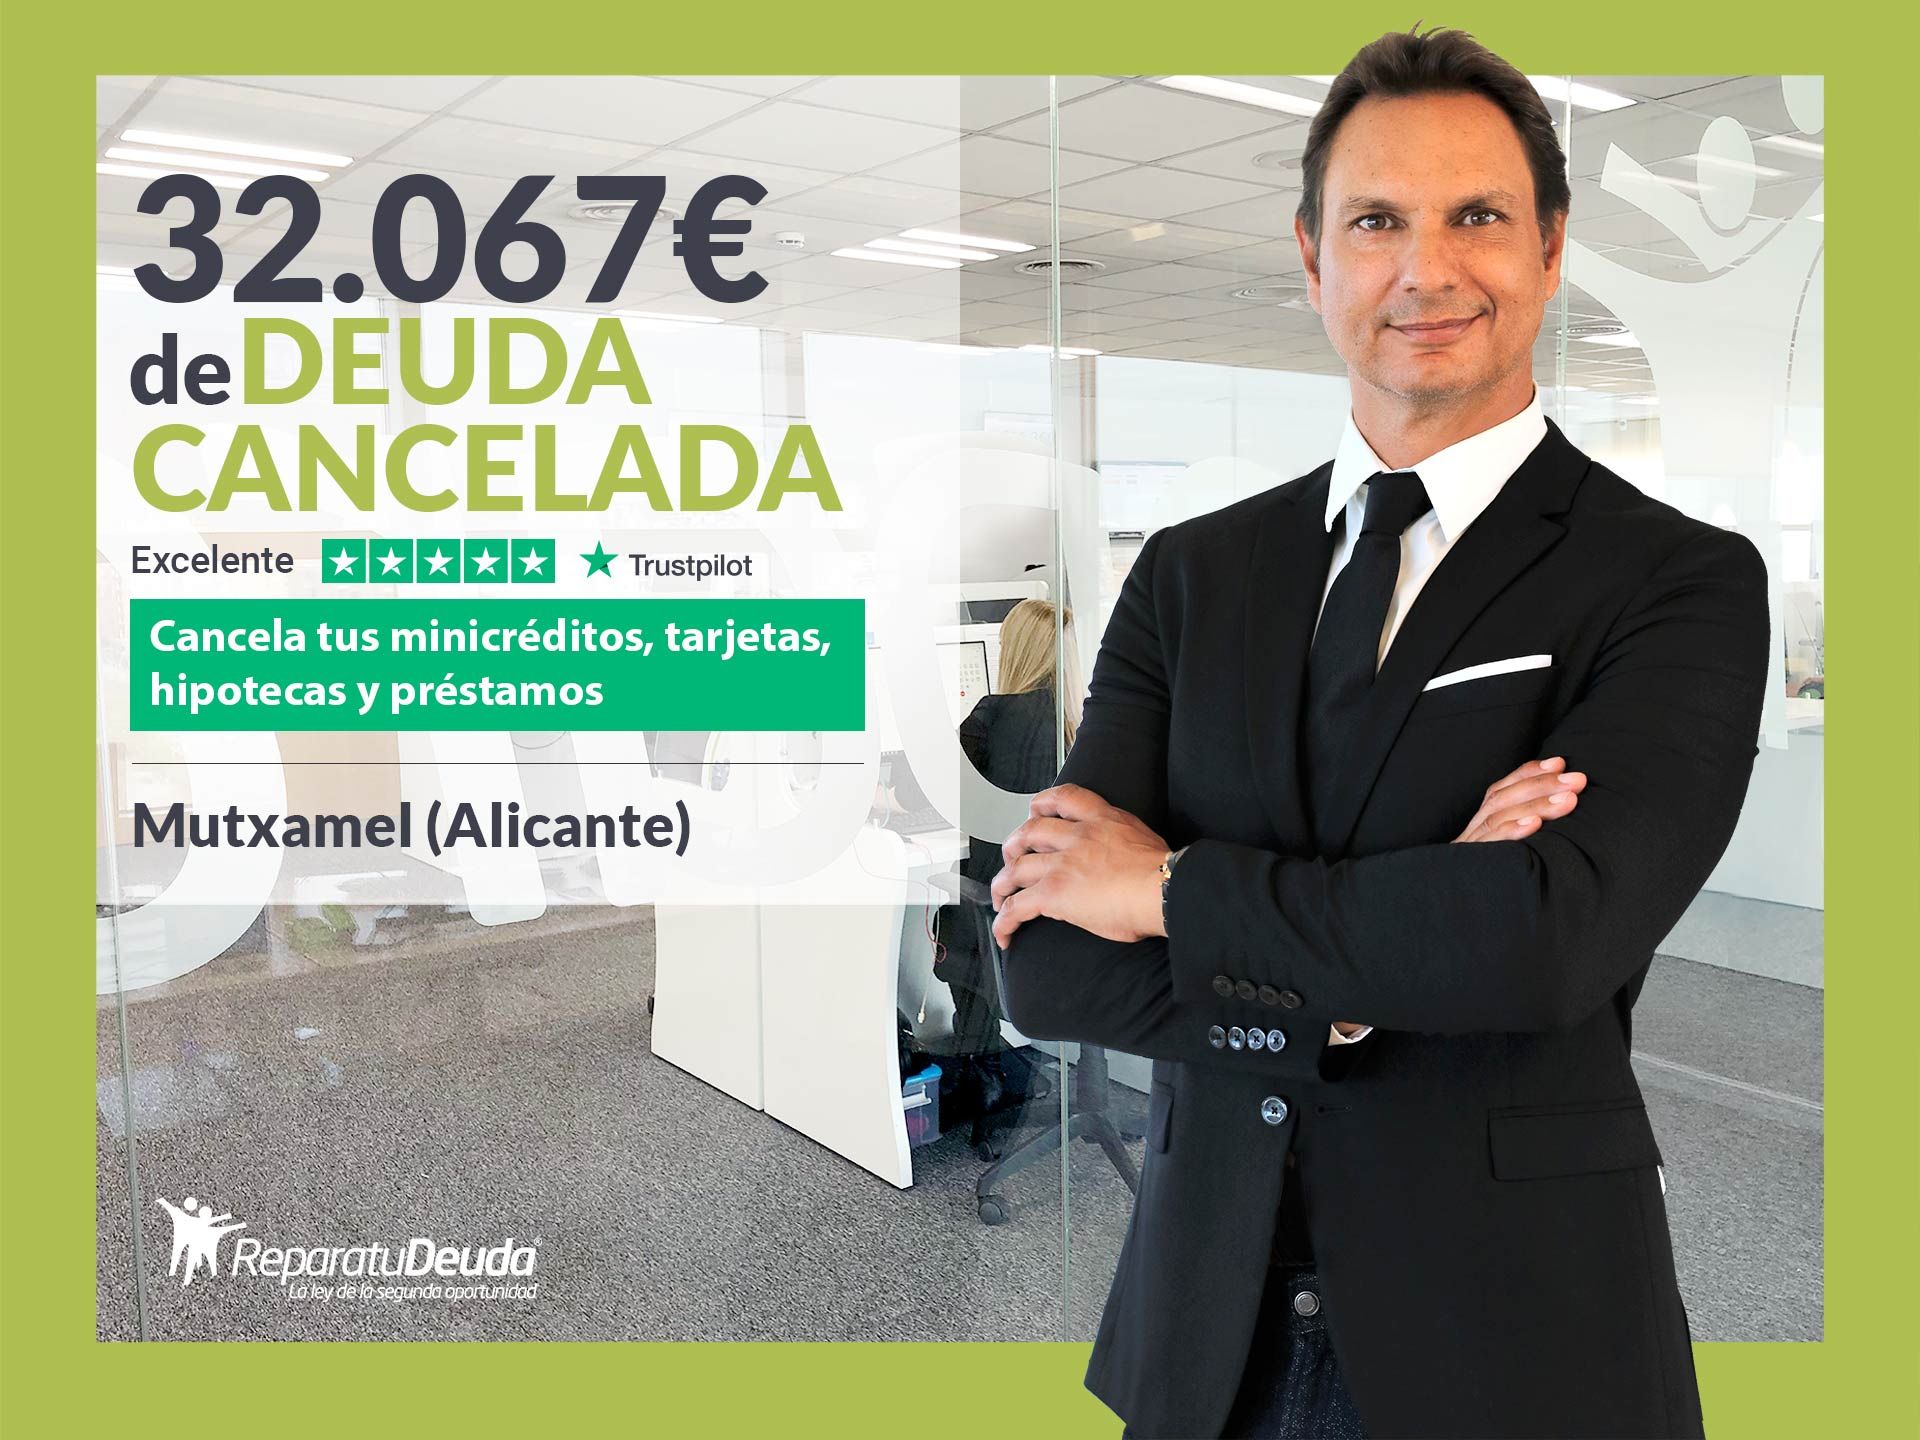 Repara tu Deuda Abogados cancela 32.067? en Mutxamel (Alicante) gracias a la Ley de Segunda Oportunidad